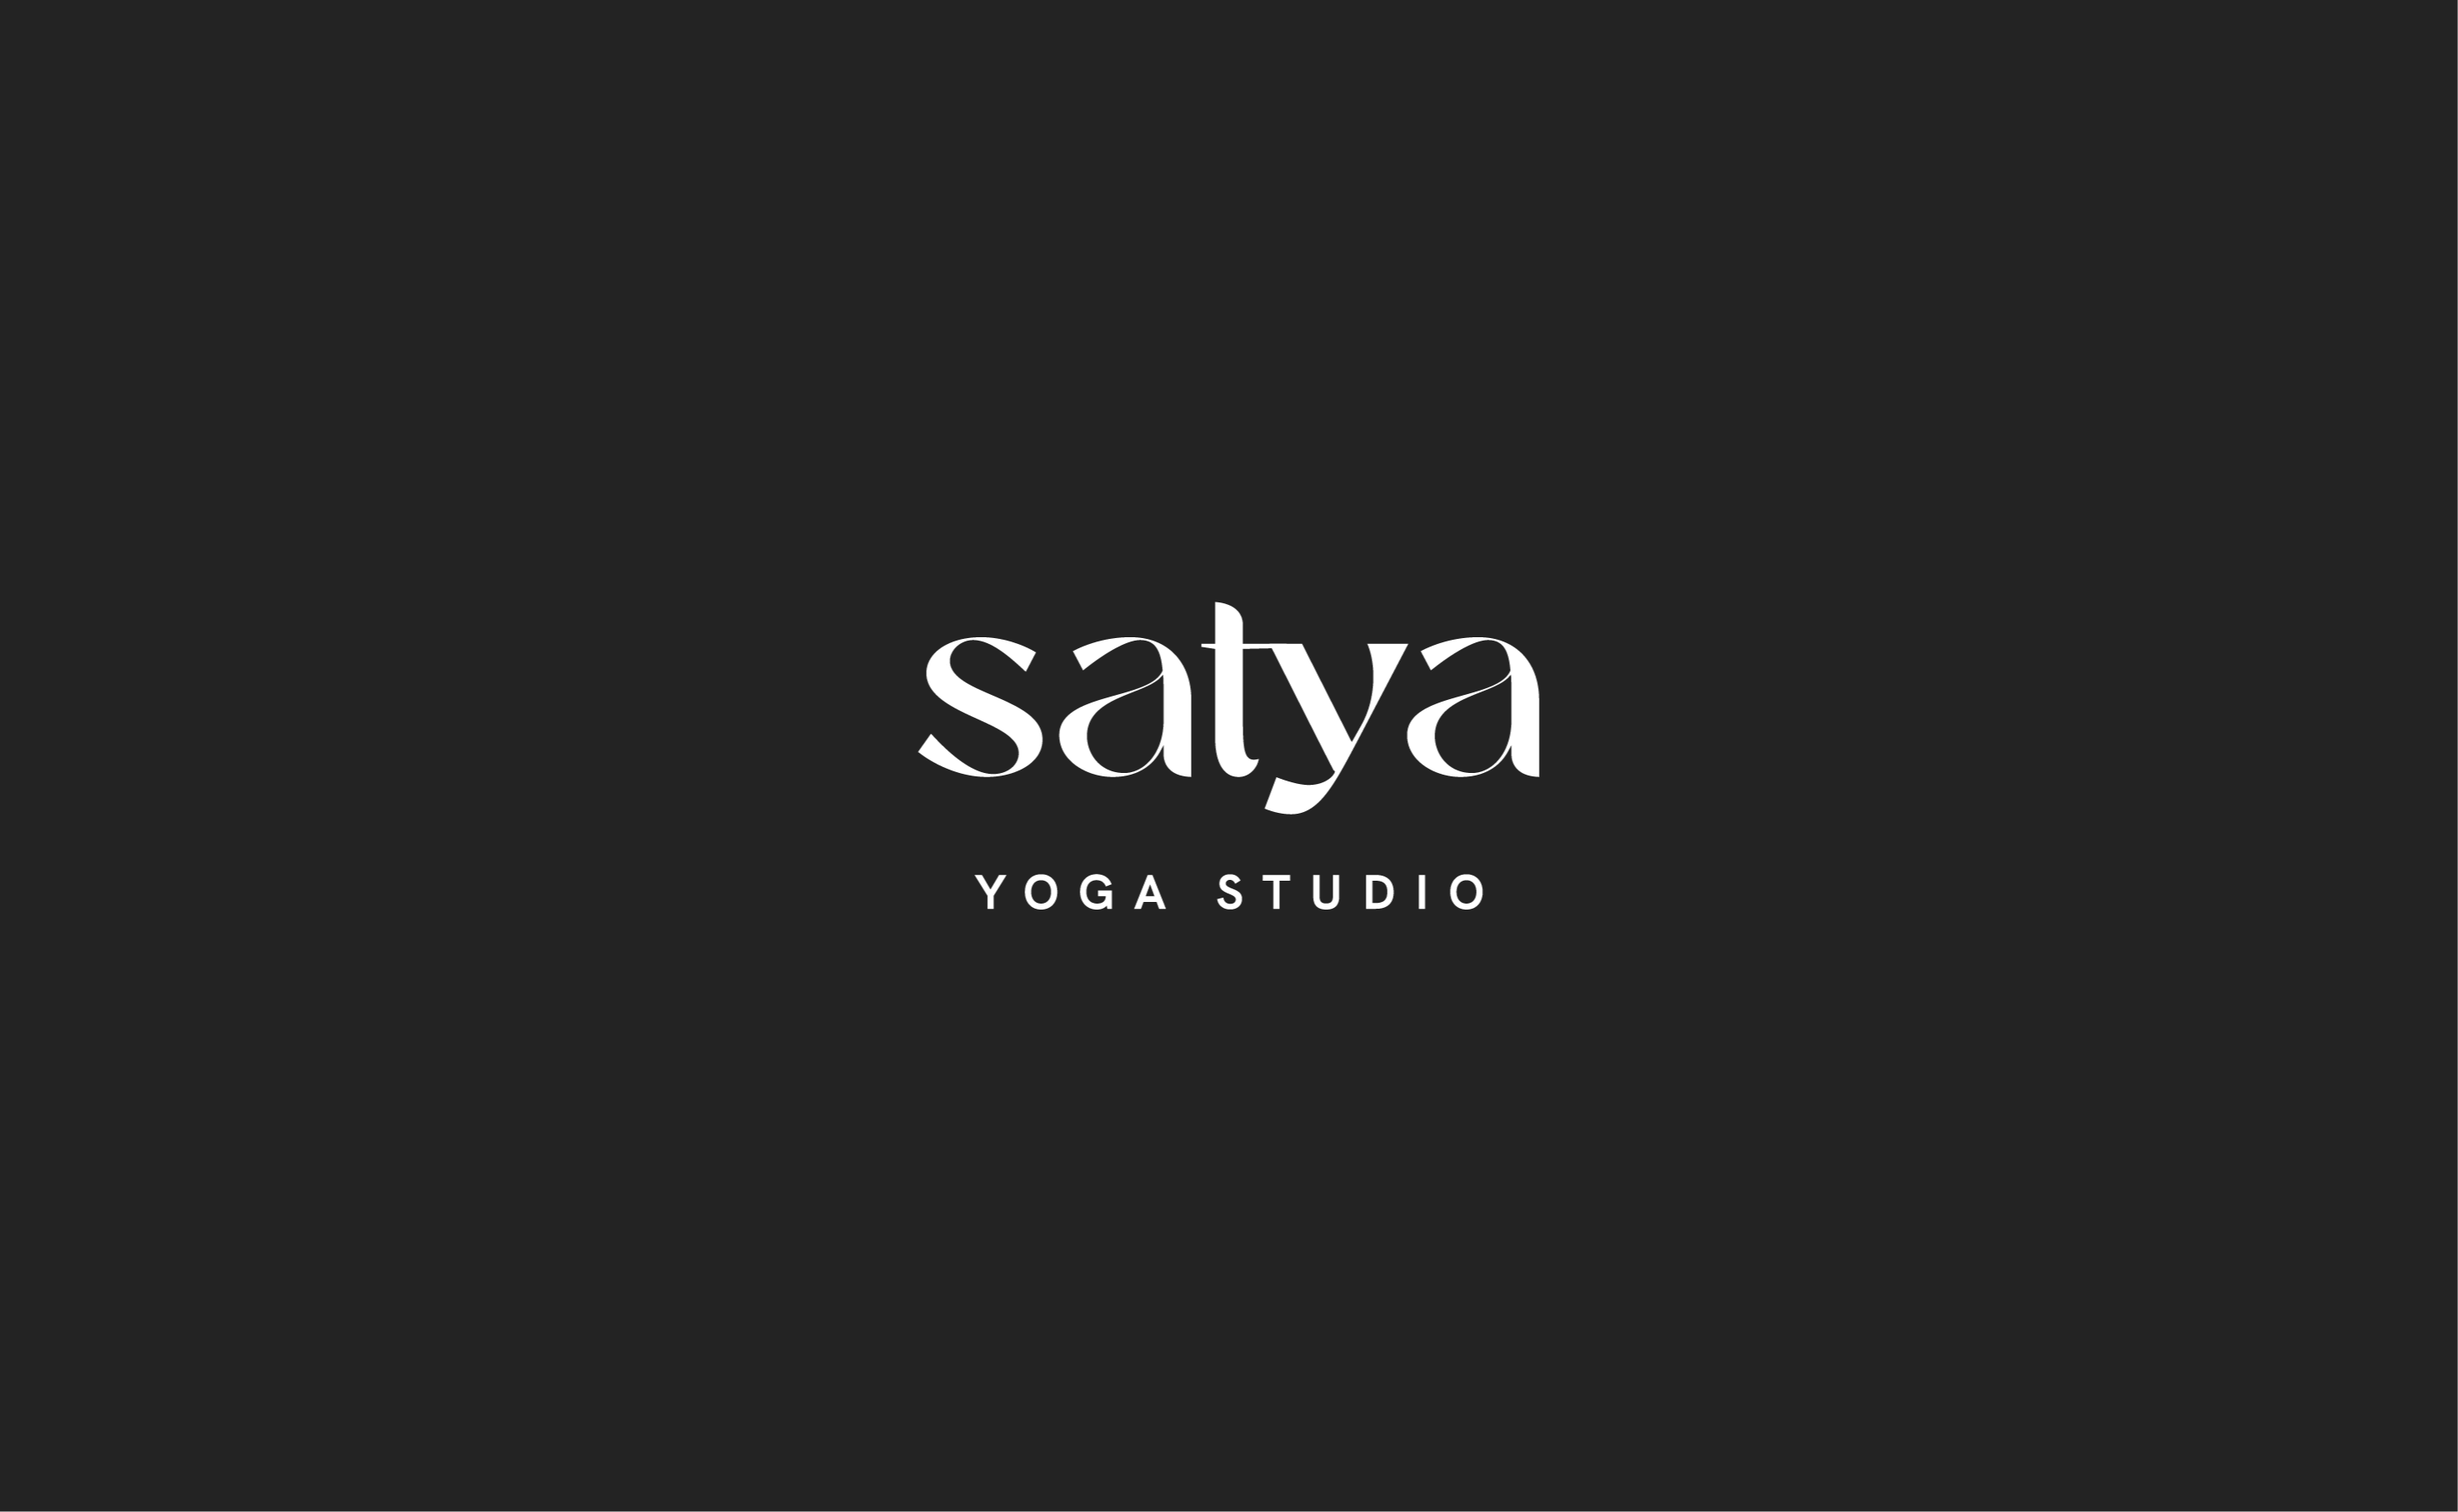 satya yoga case study 2